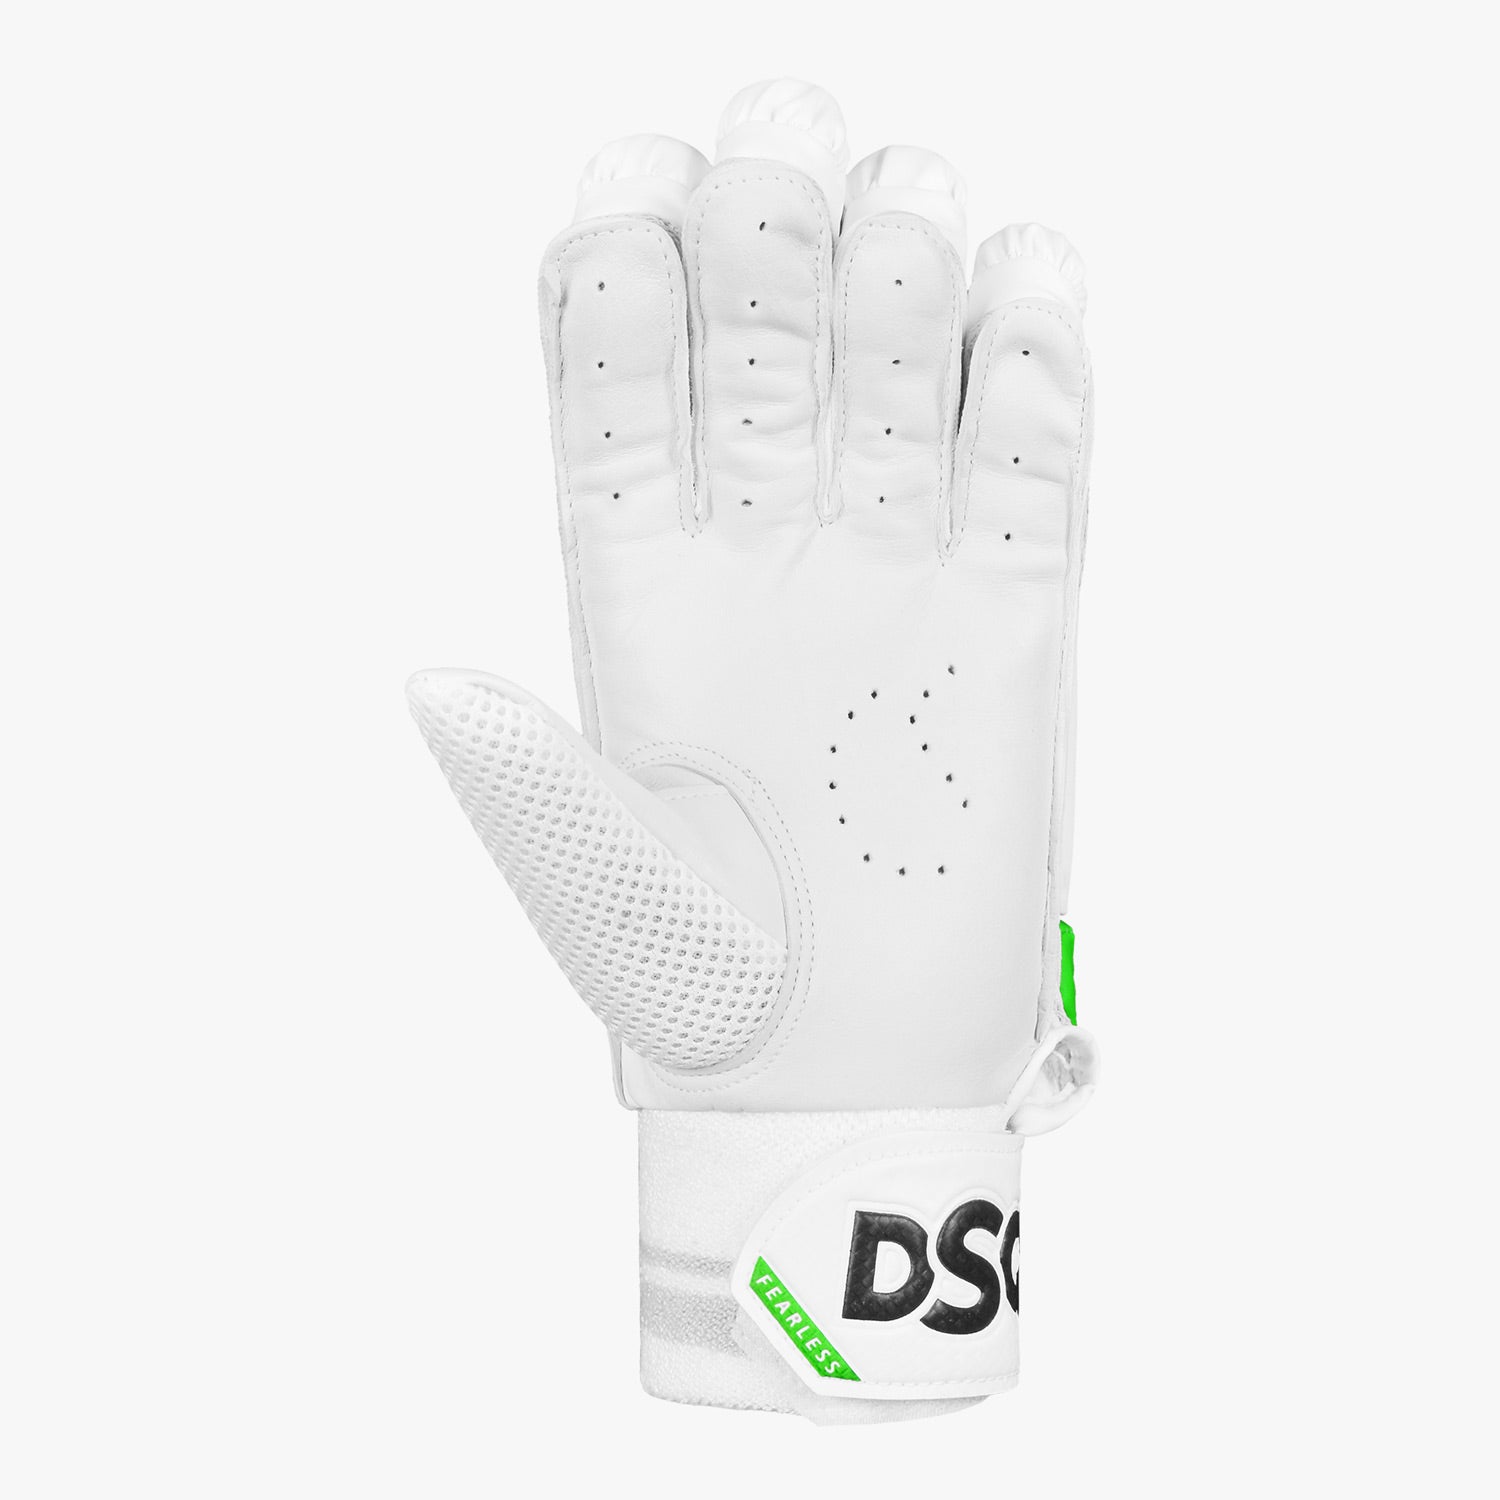 DSC Spliit 4000 Batting Gloves